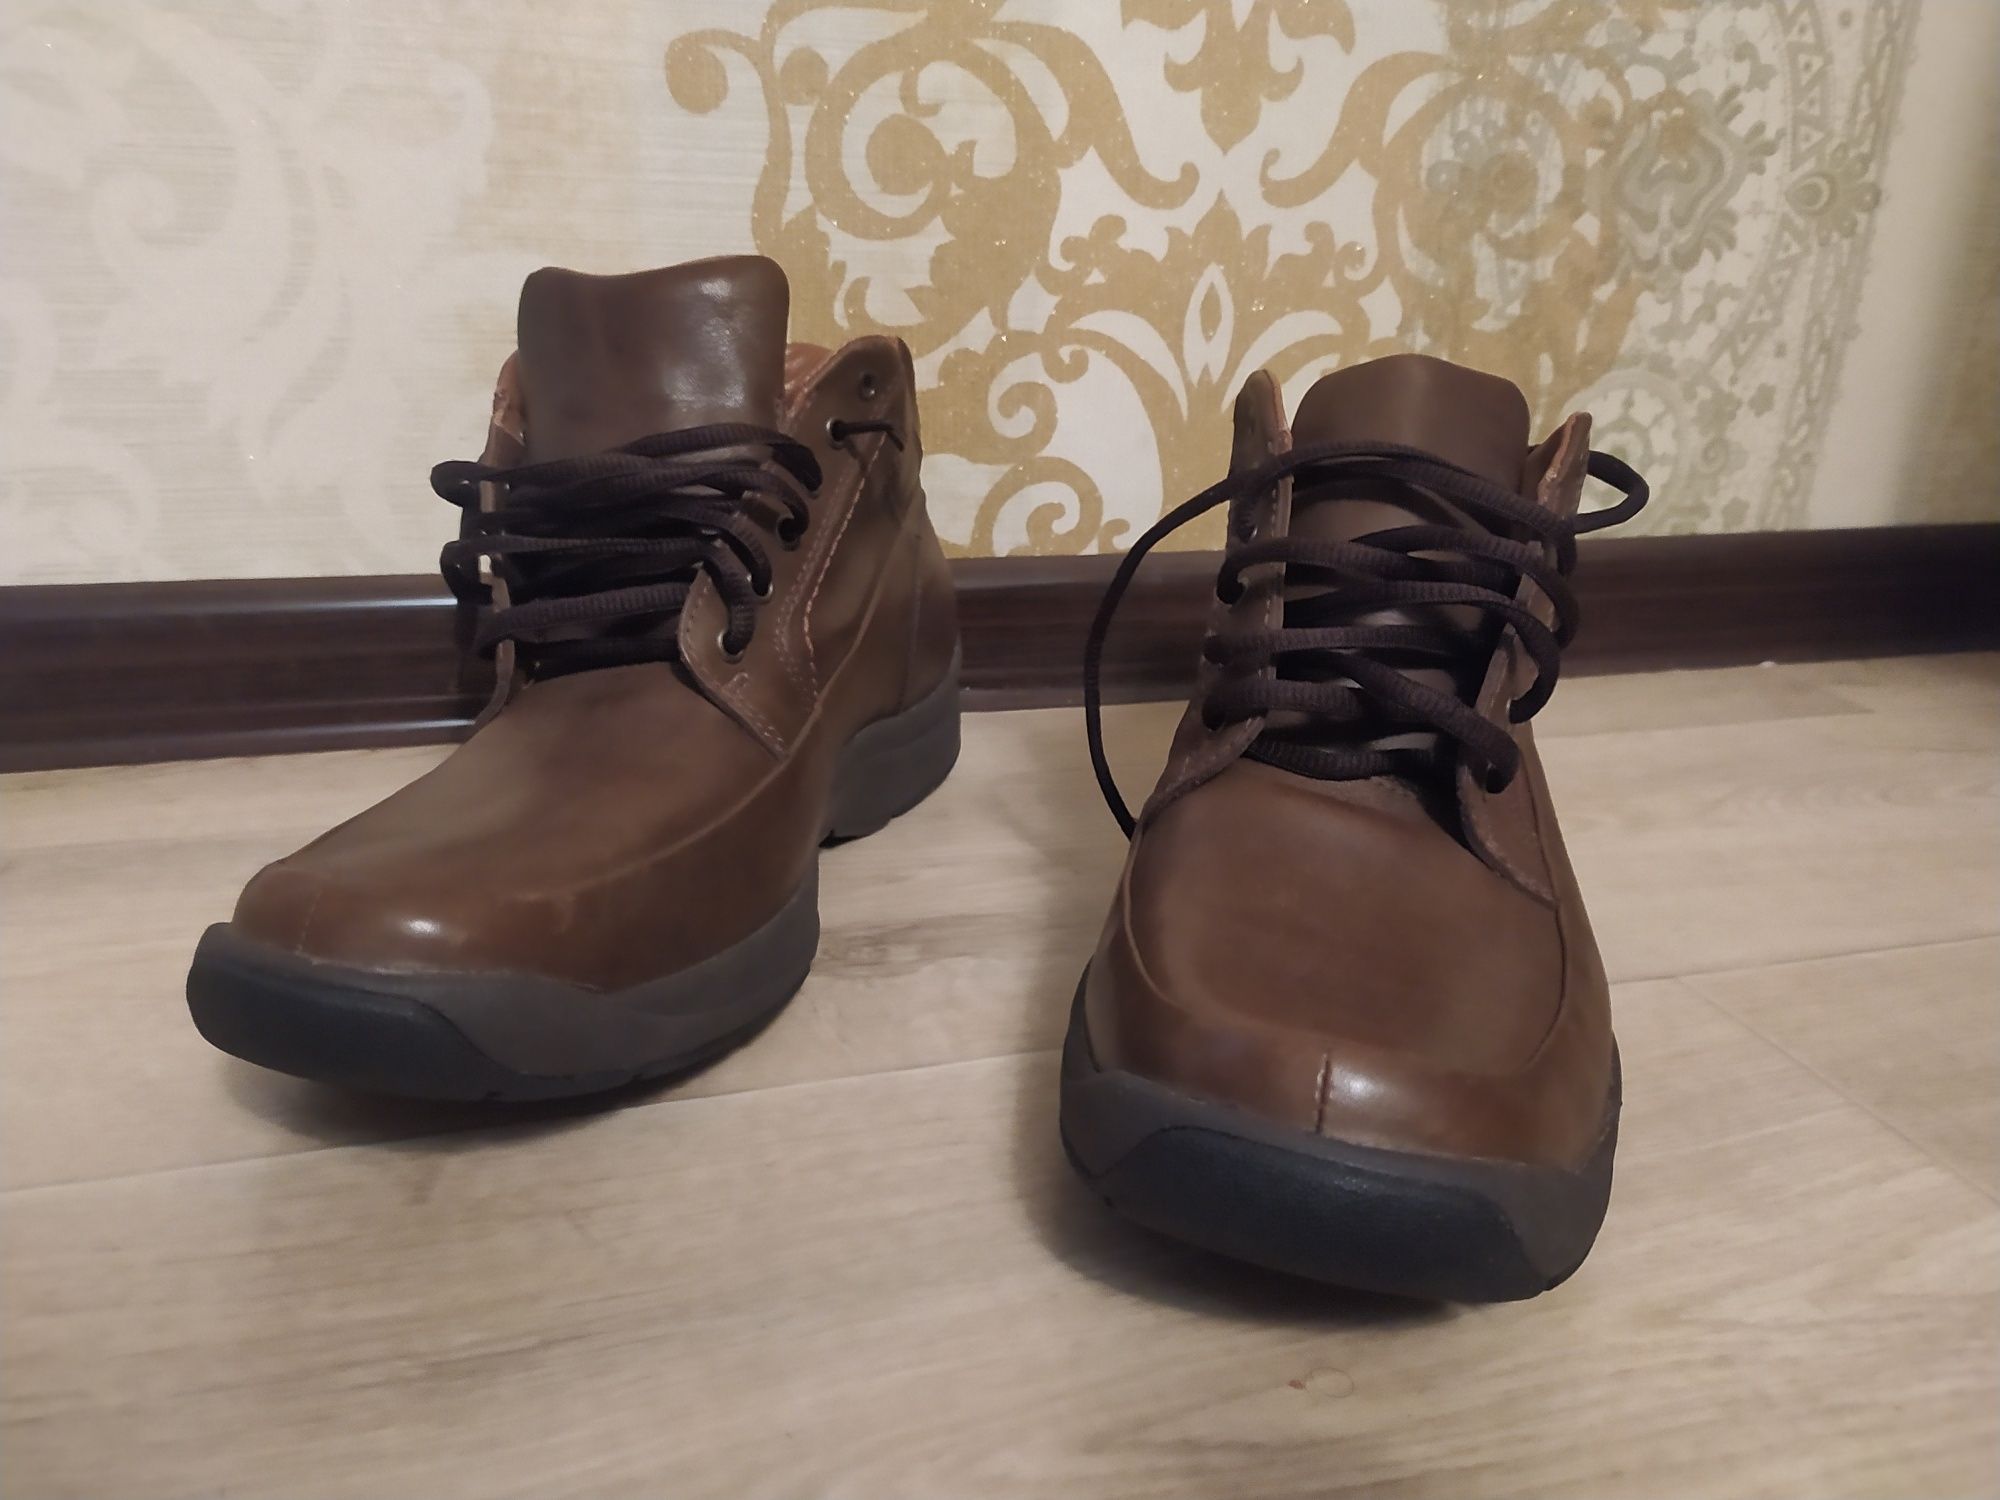 Новые лёгкие кожаные ботинки Clarks Ecco Gore Tex UK9 43 43,5 44 29 см